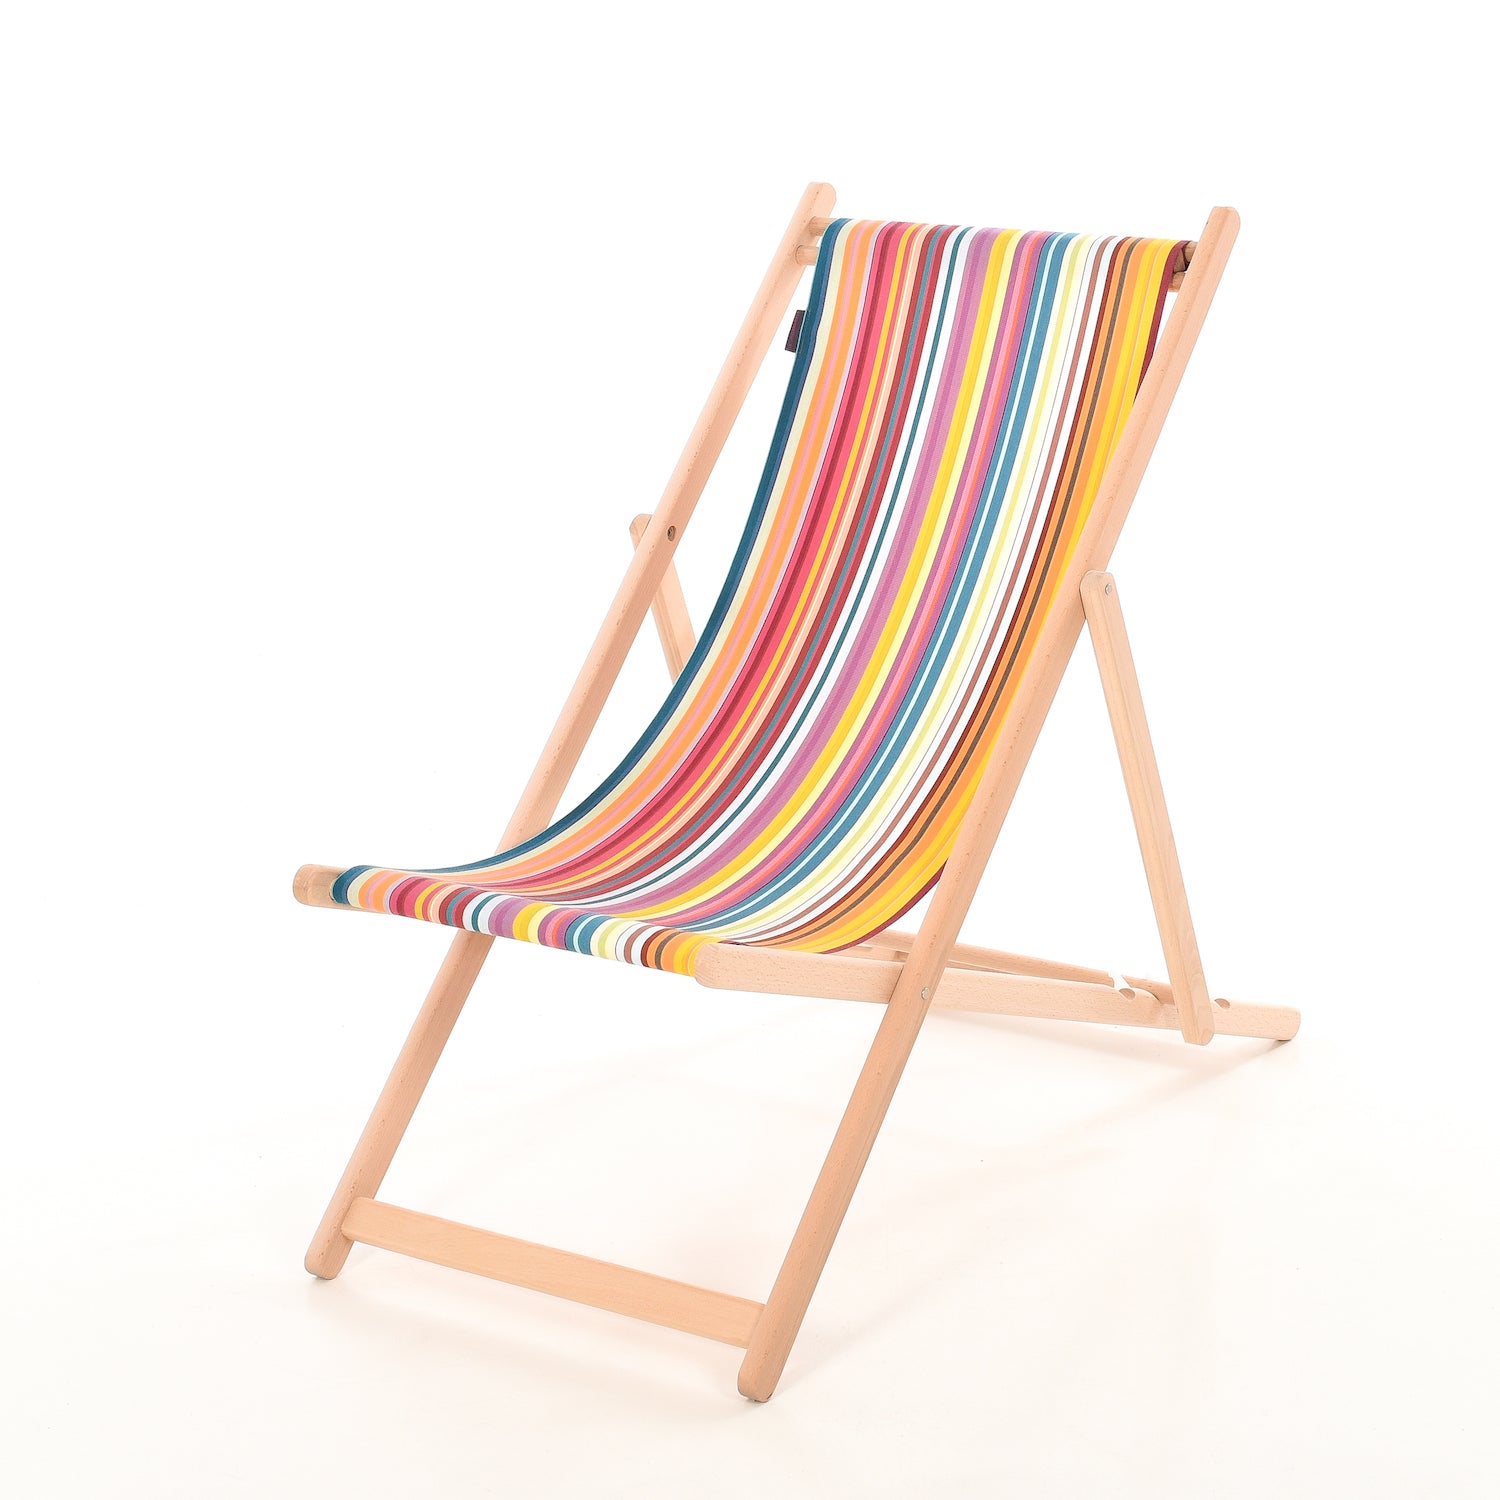 nakoming Blauwdruk Geniet houten strandstoel met outdoor stof jour de fete - kleurmeester.nl –  Kleurmeester.nl